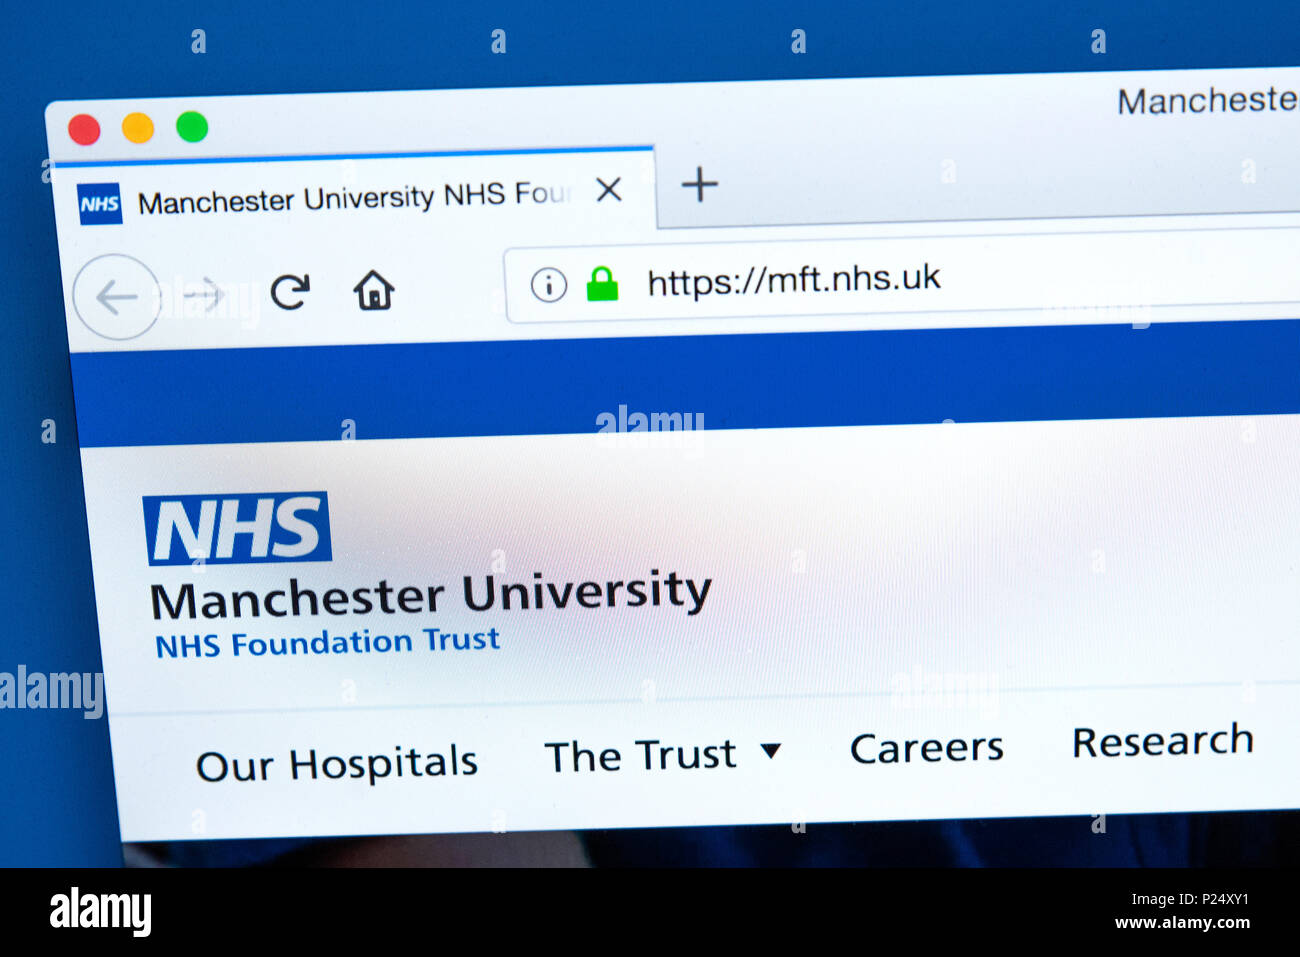 Londres, UK - 5 mars 2018 : La page d'accueil du site web officiel de la Manchester University NHS Foundation Trust, le 5 mars 2018. Banque D'Images